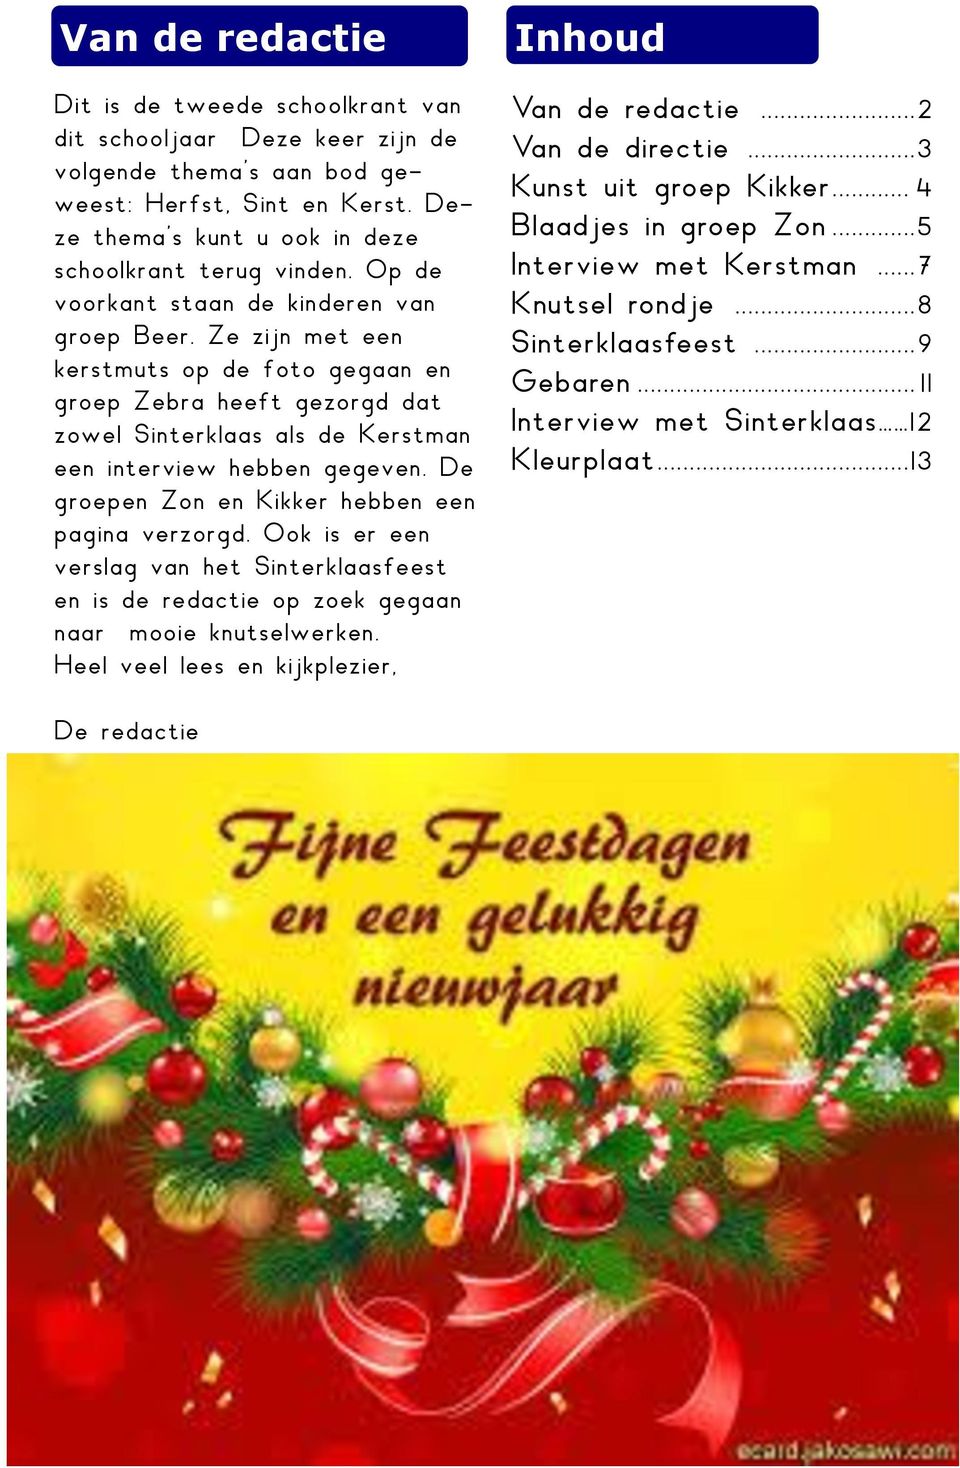 De groepen Zon en Kikker hebben een pagina verzorgd. Ook is er een verslag van het Sinterklaasfeest en is de redactie op zoek gegaan naar mooie knutselwerken.